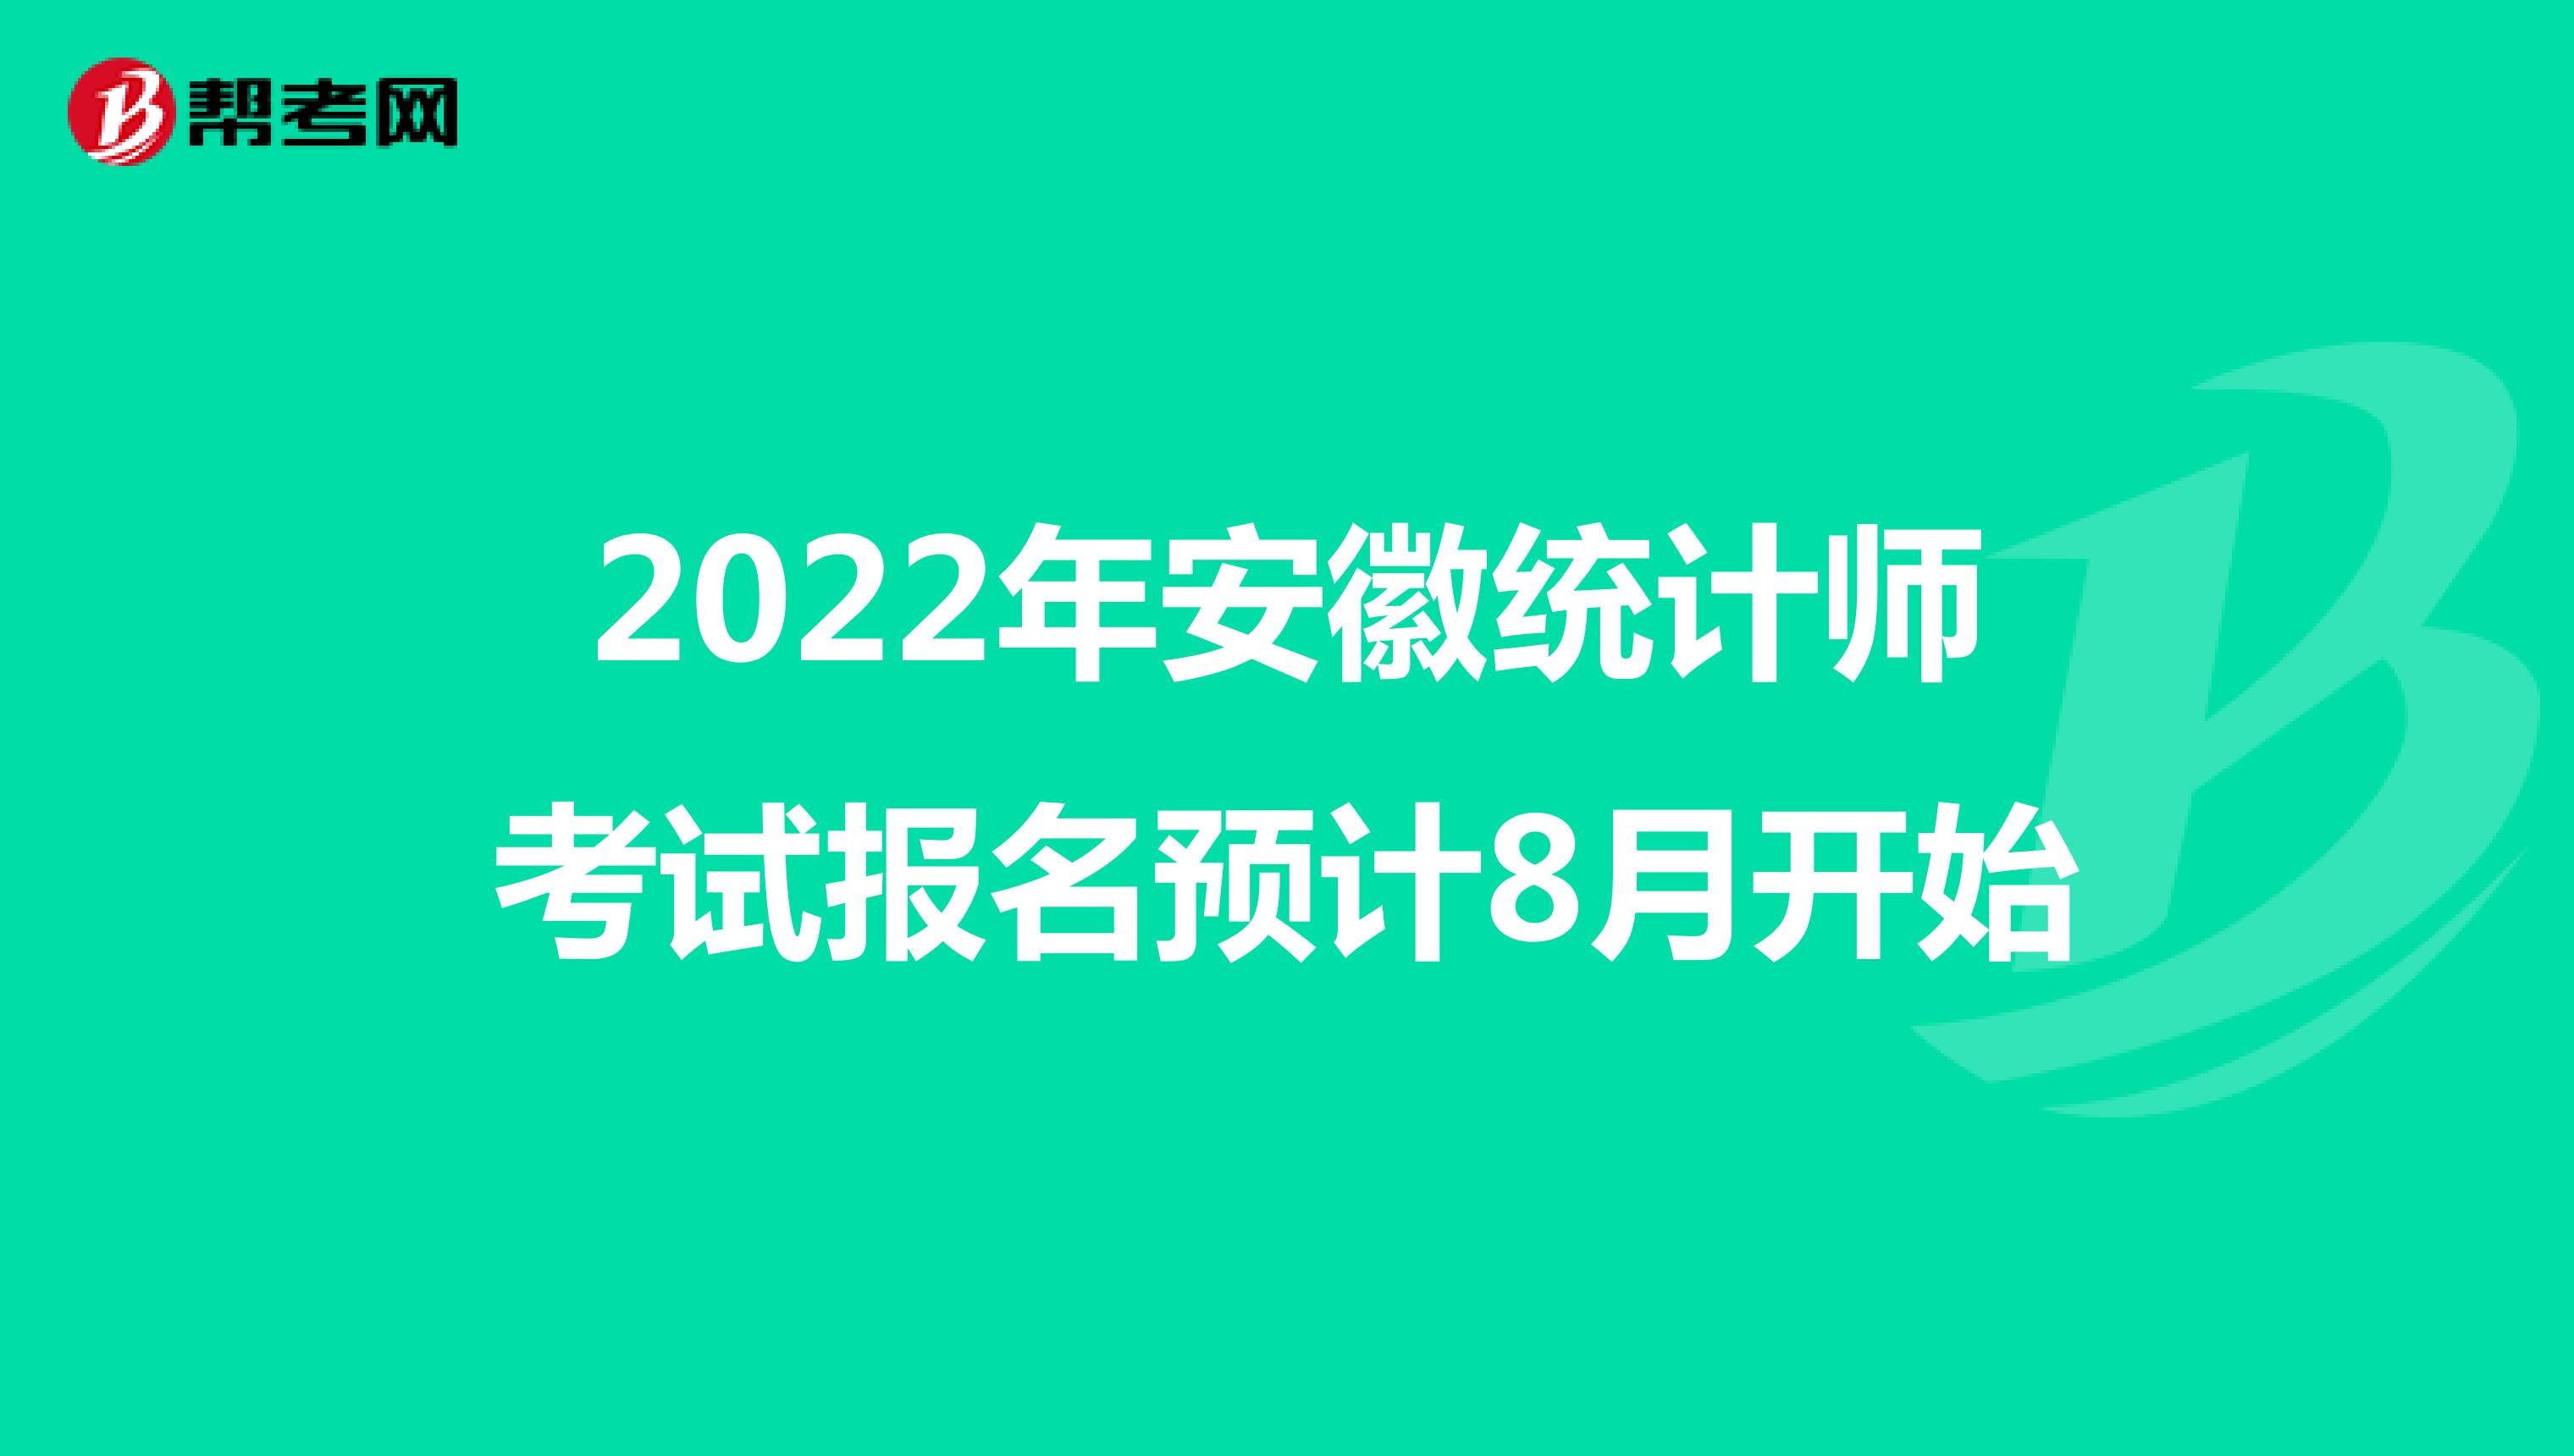 2022年安徽统计师考试报名预计8月开始